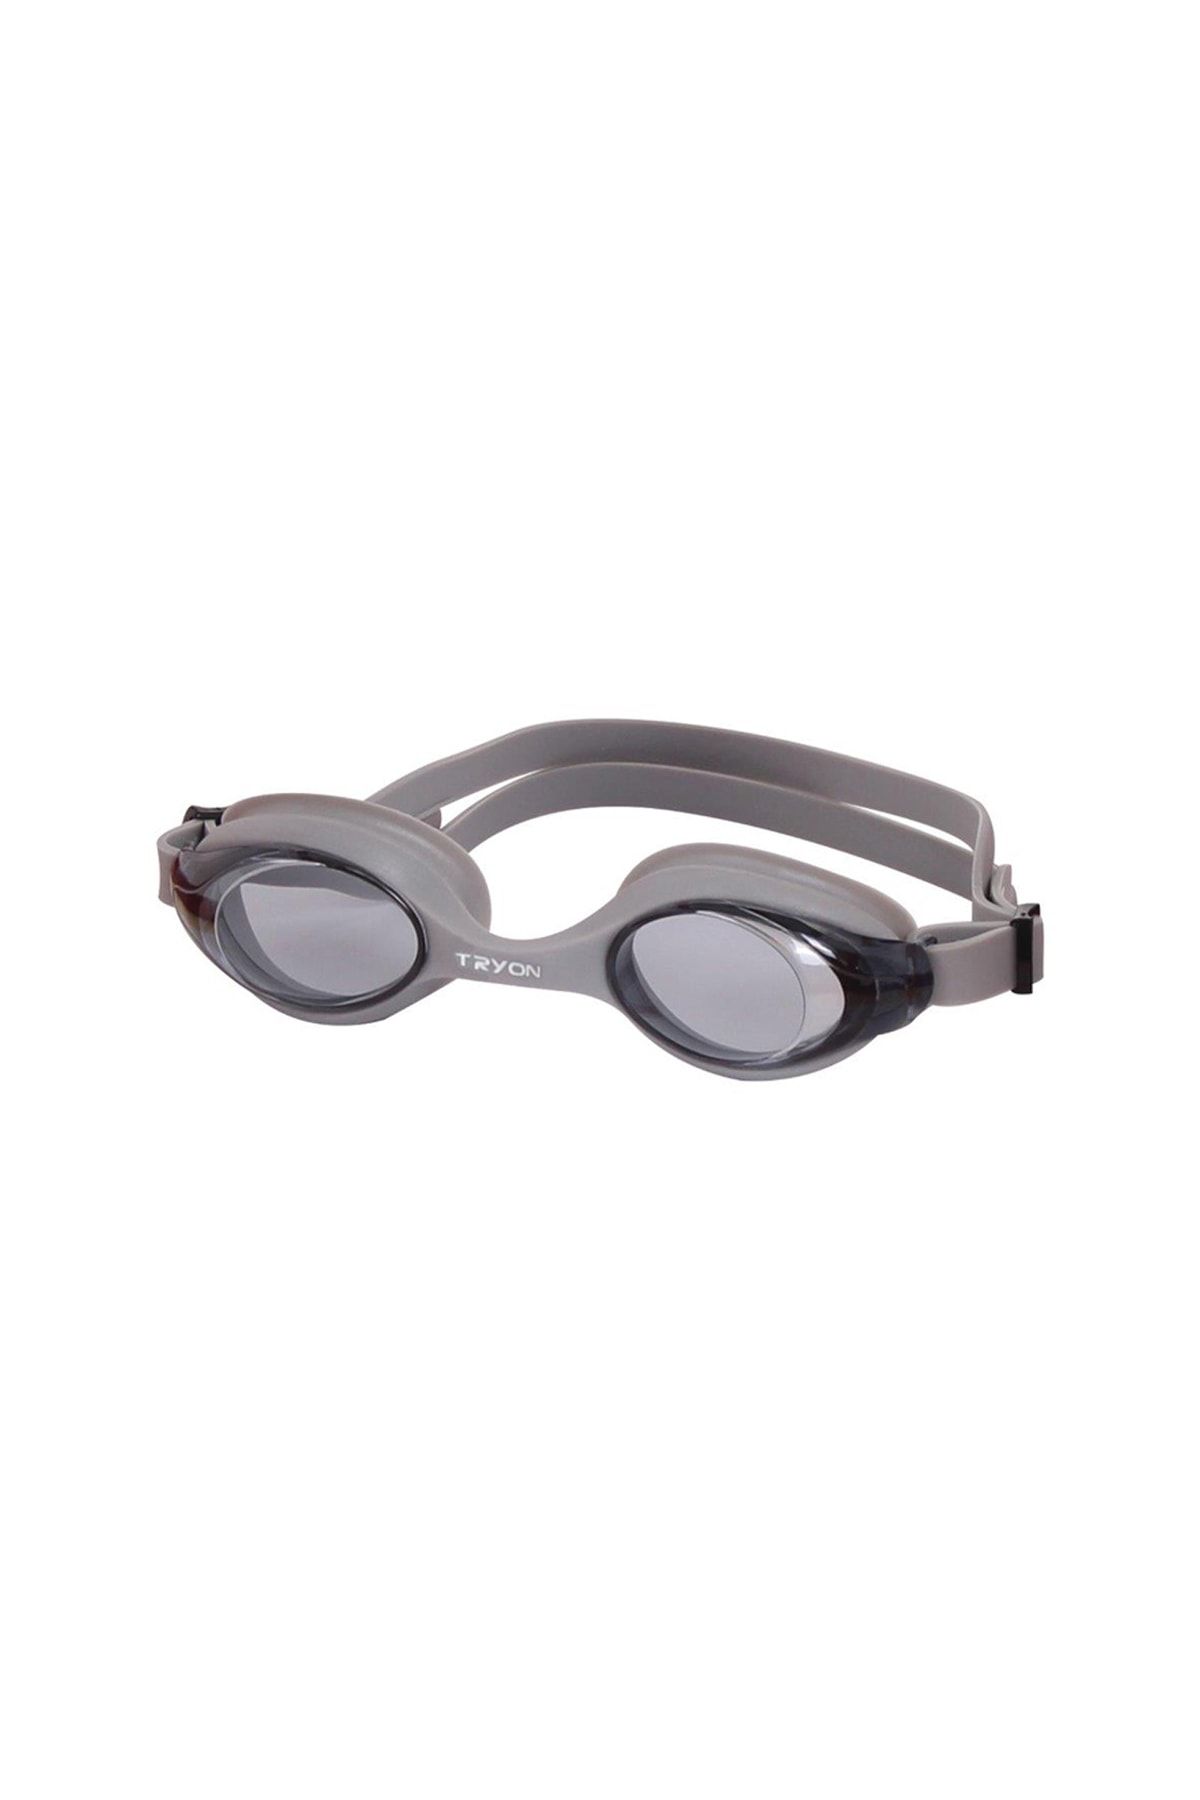 TRYON Gümüş Yüzücü Gözlüğü Yg-400-1yüzücü Gözlüğü Yg-400